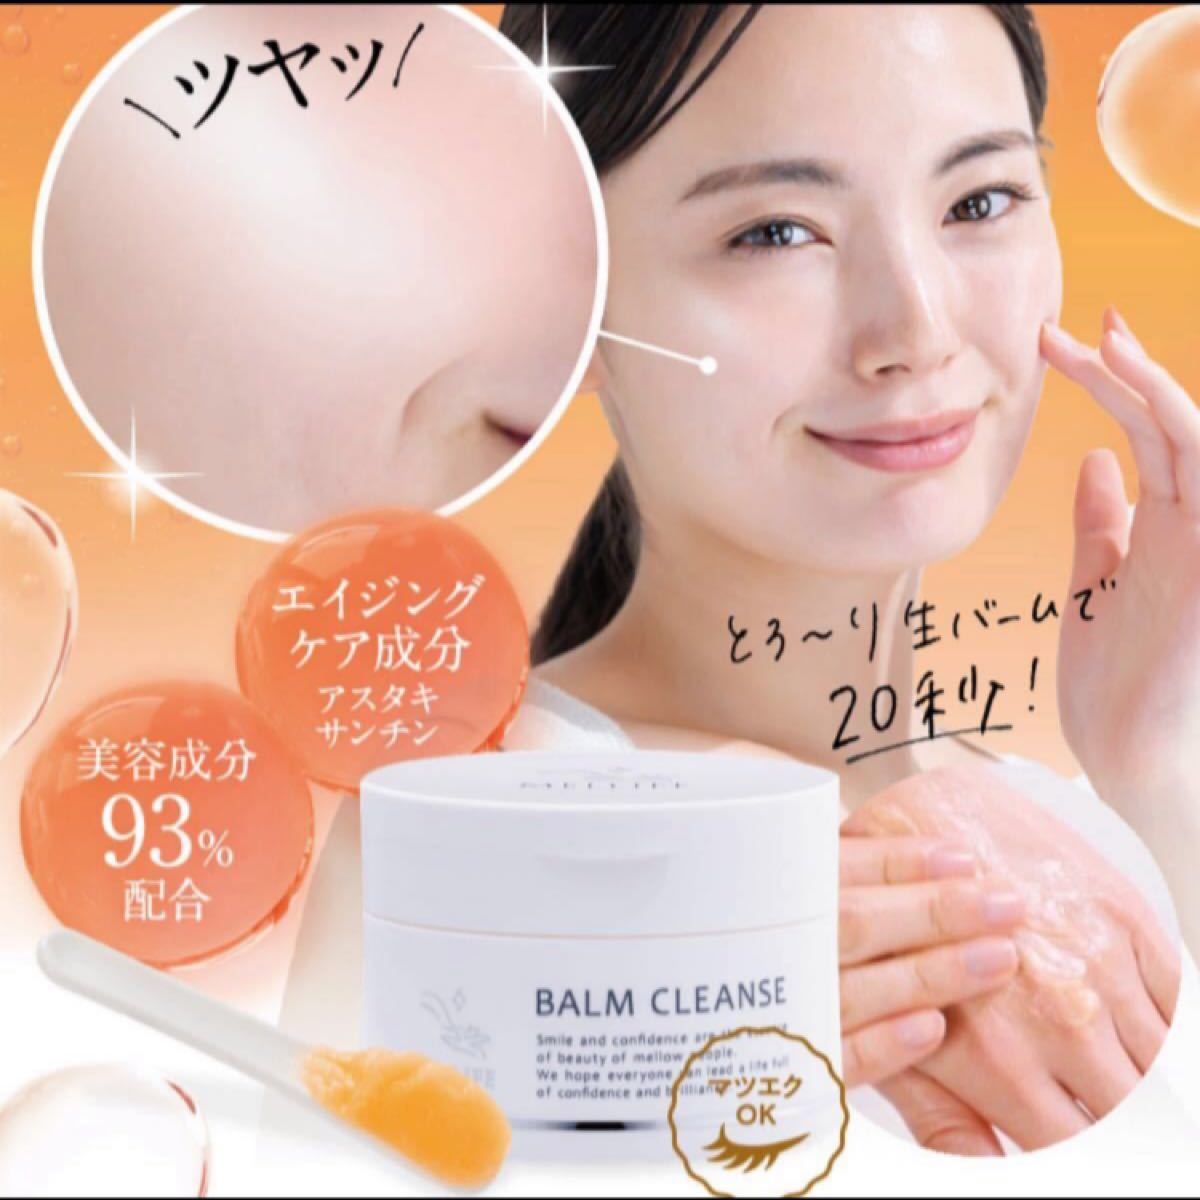 メリフ バームクレンズ BALM CLEANSE | toyama-th.tym.ed.jp